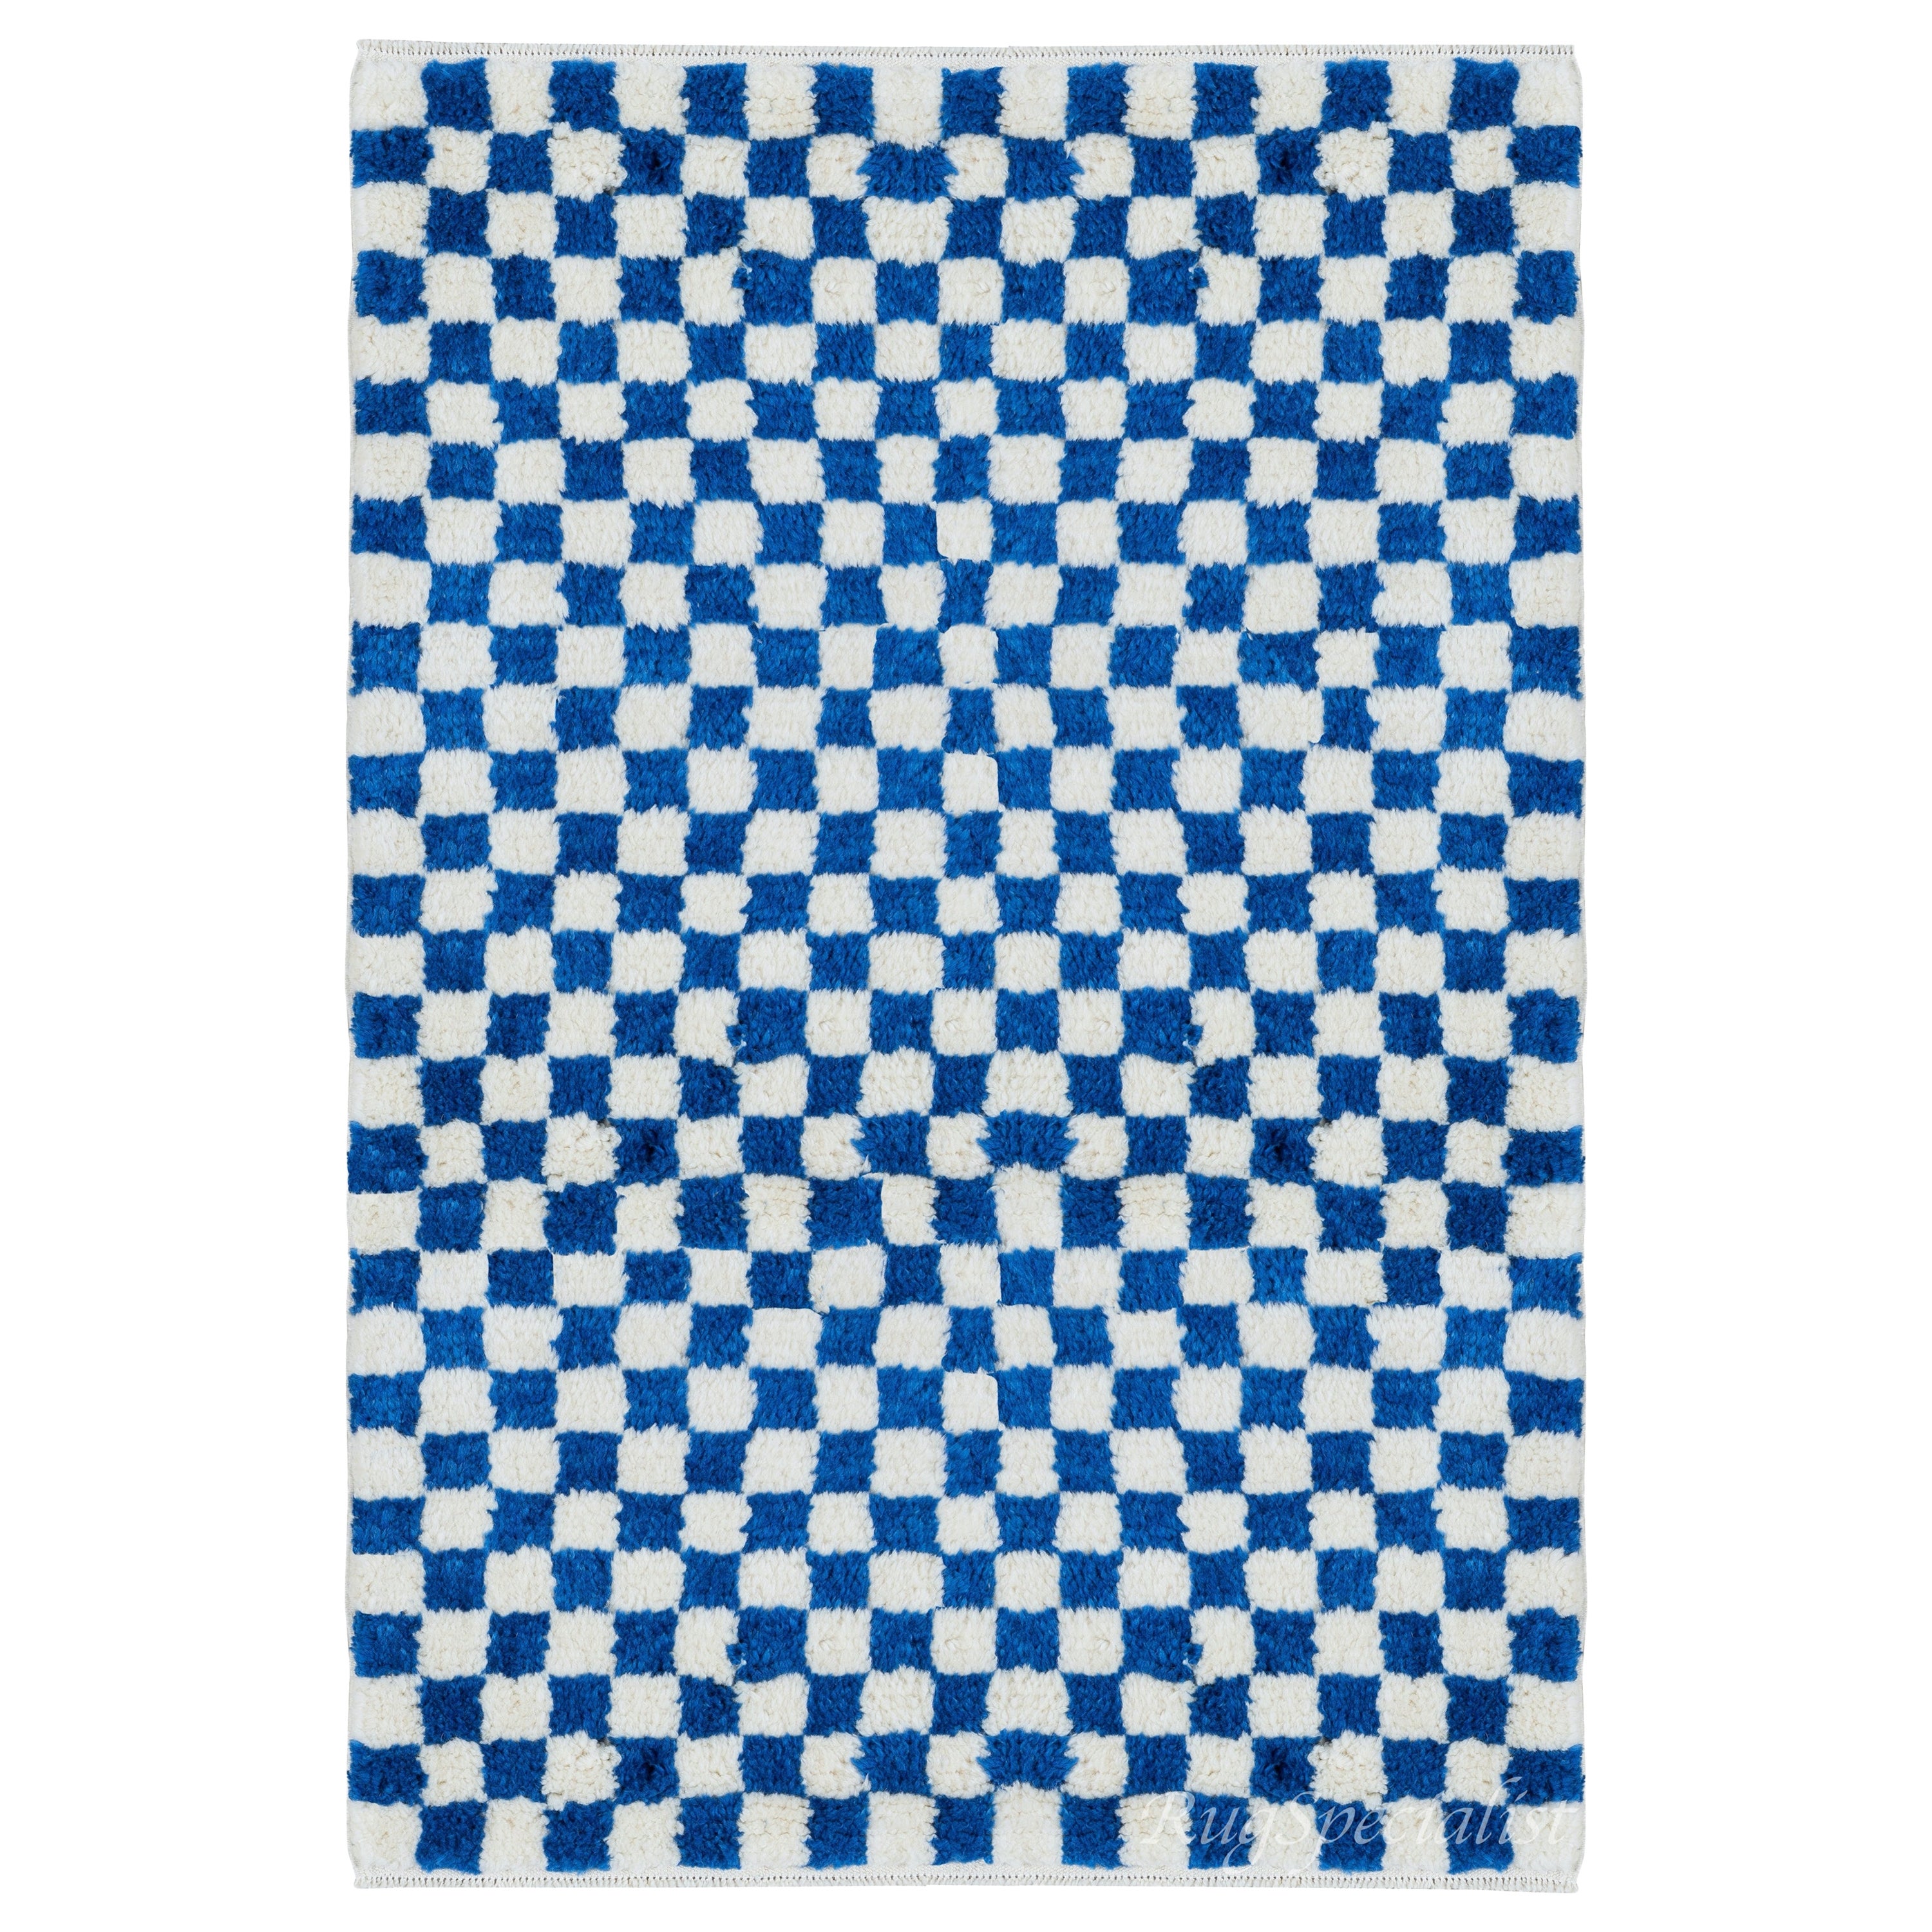 Maßgefertigter handgefertigter Tulu-Teppich im karierten Design in Blau & Elfenbein, 100 % weiche, gemütliche Wolle